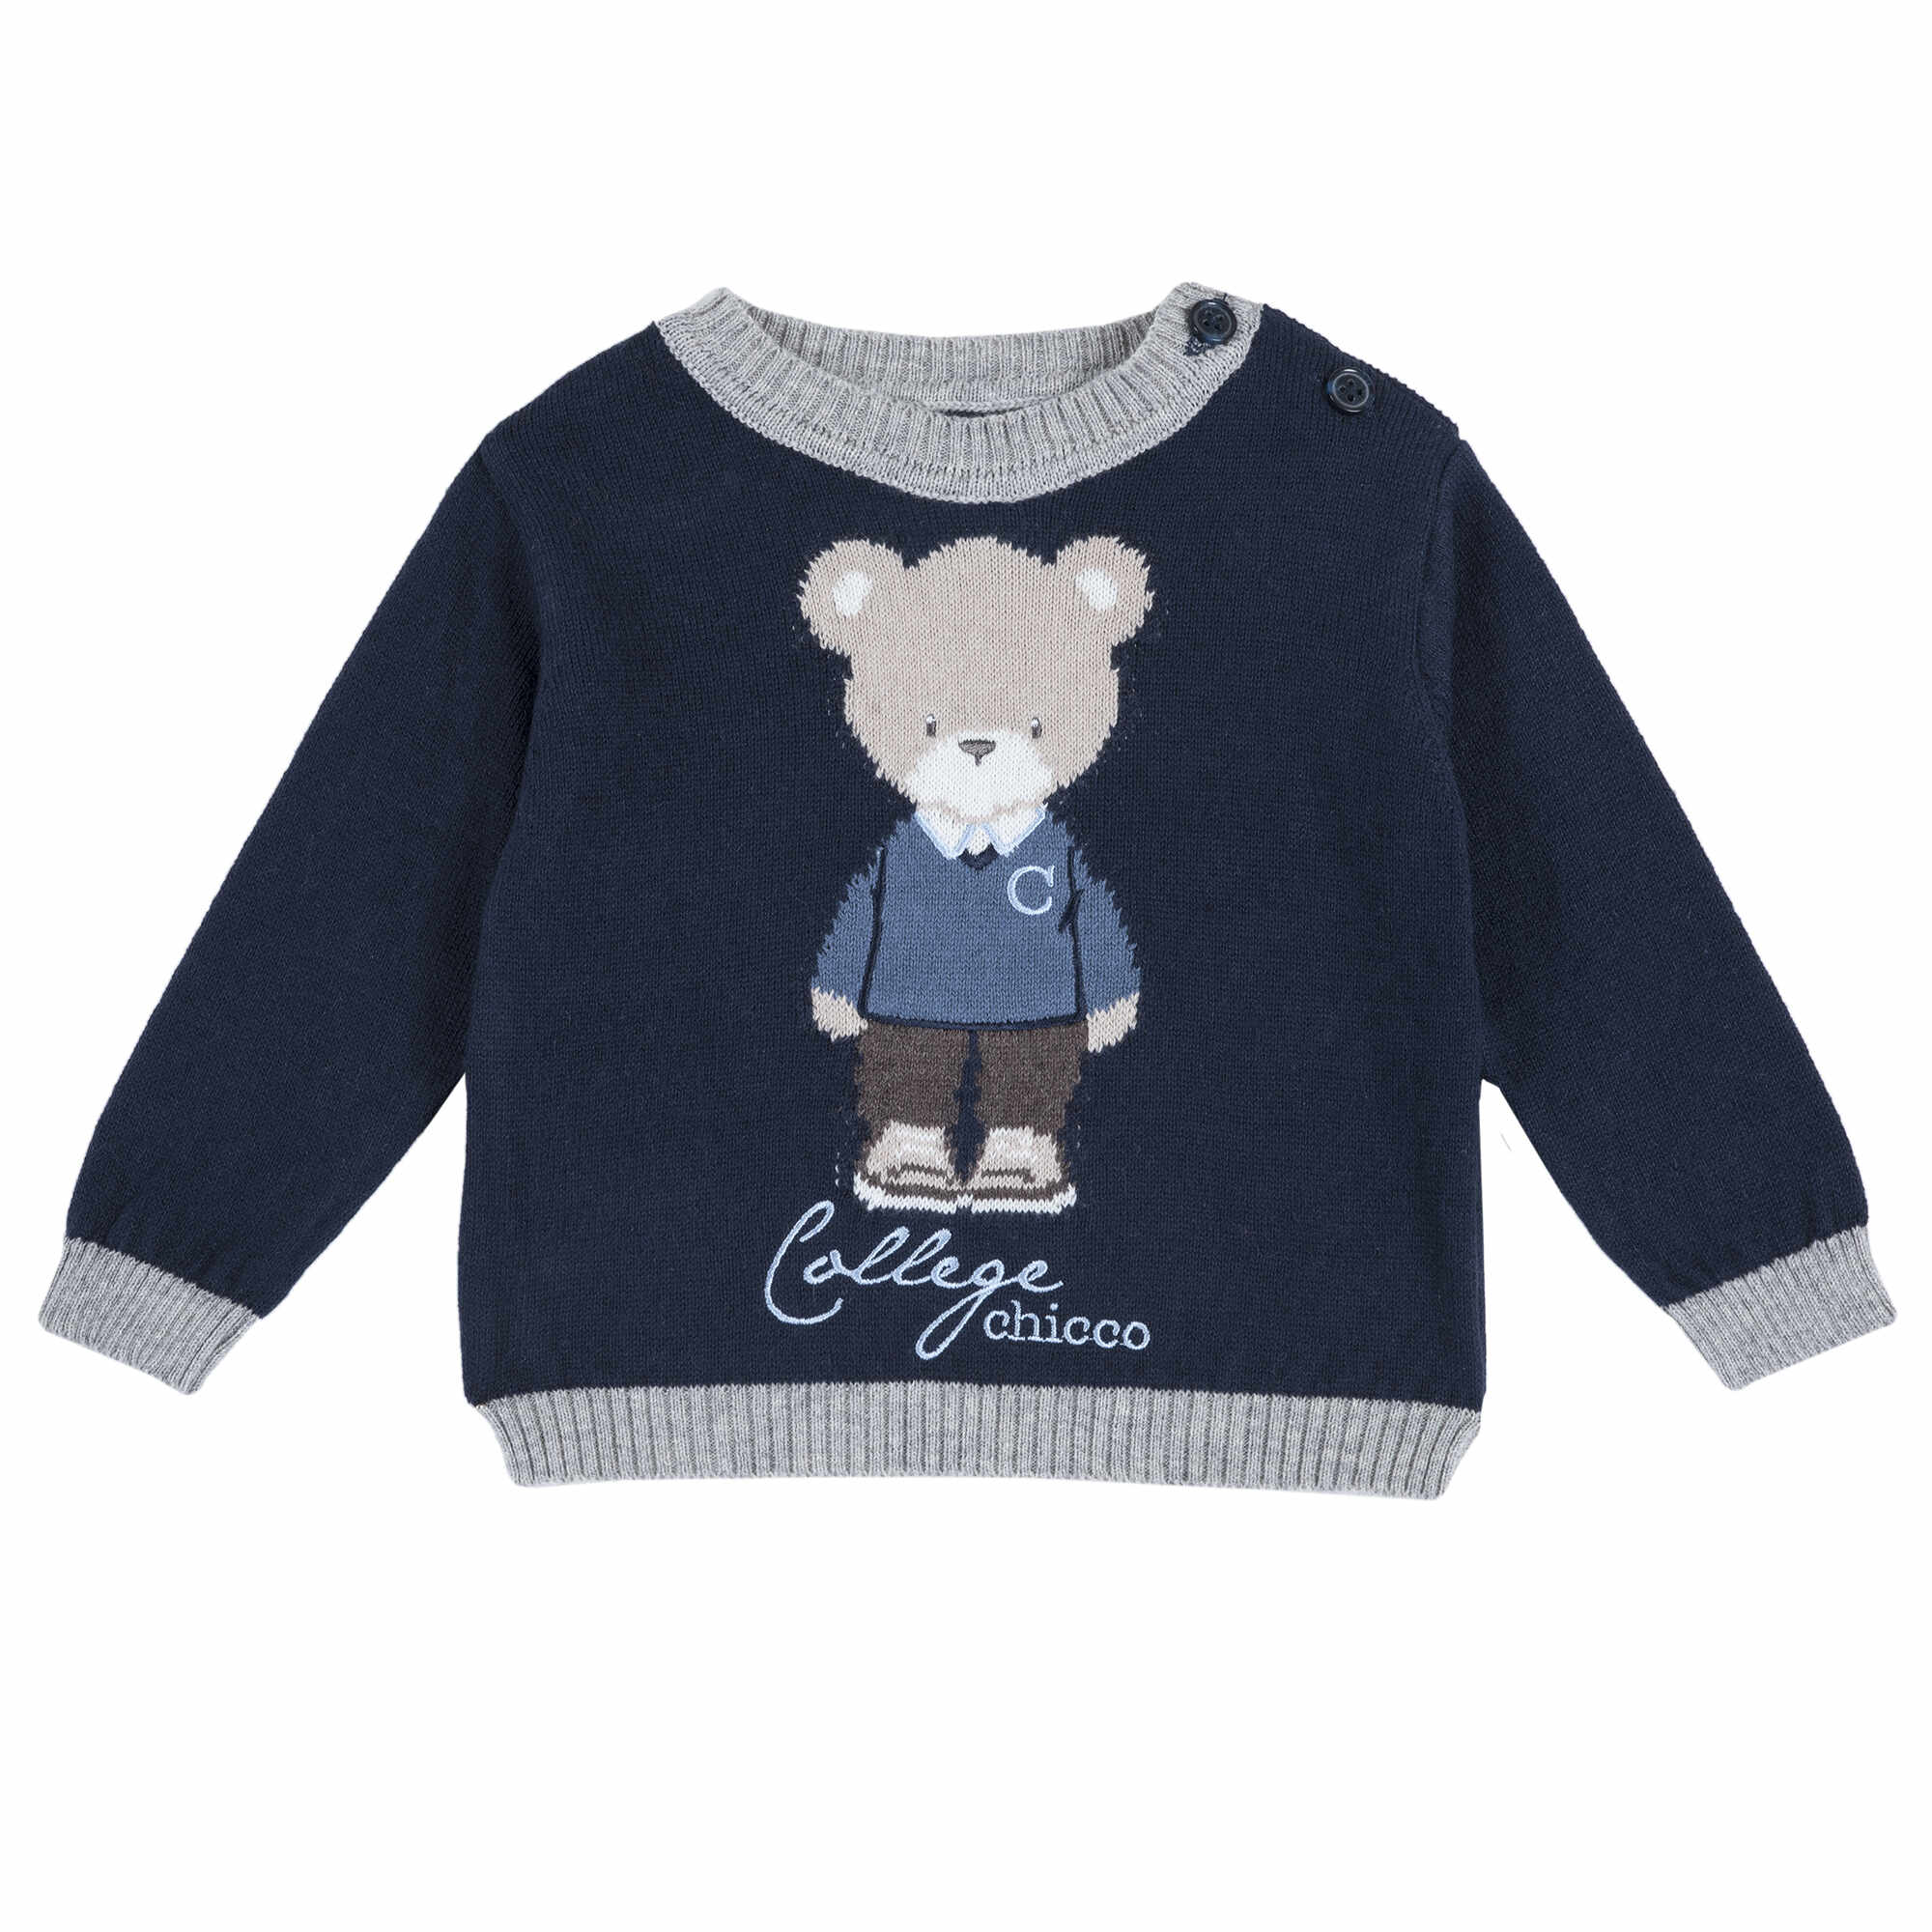 Pulover copii Chicco, tricotat, imprimeu ursulet, 69381